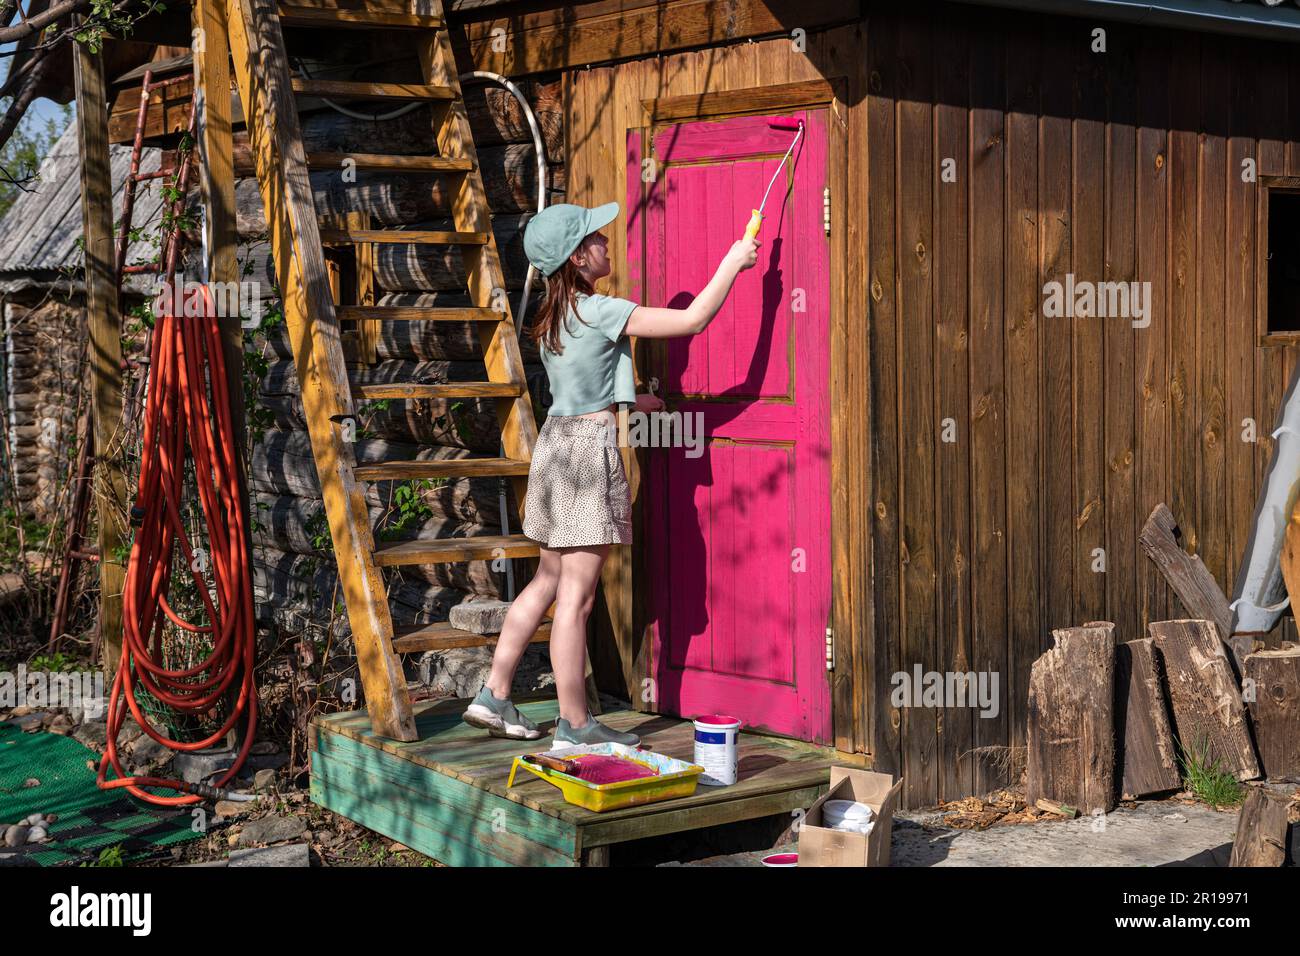 Ragazza carina dipingere la porta di una casa di legno in un chiaro colore viola, rosa, fucsia. casa di campagna, vita di campagna Foto Stock